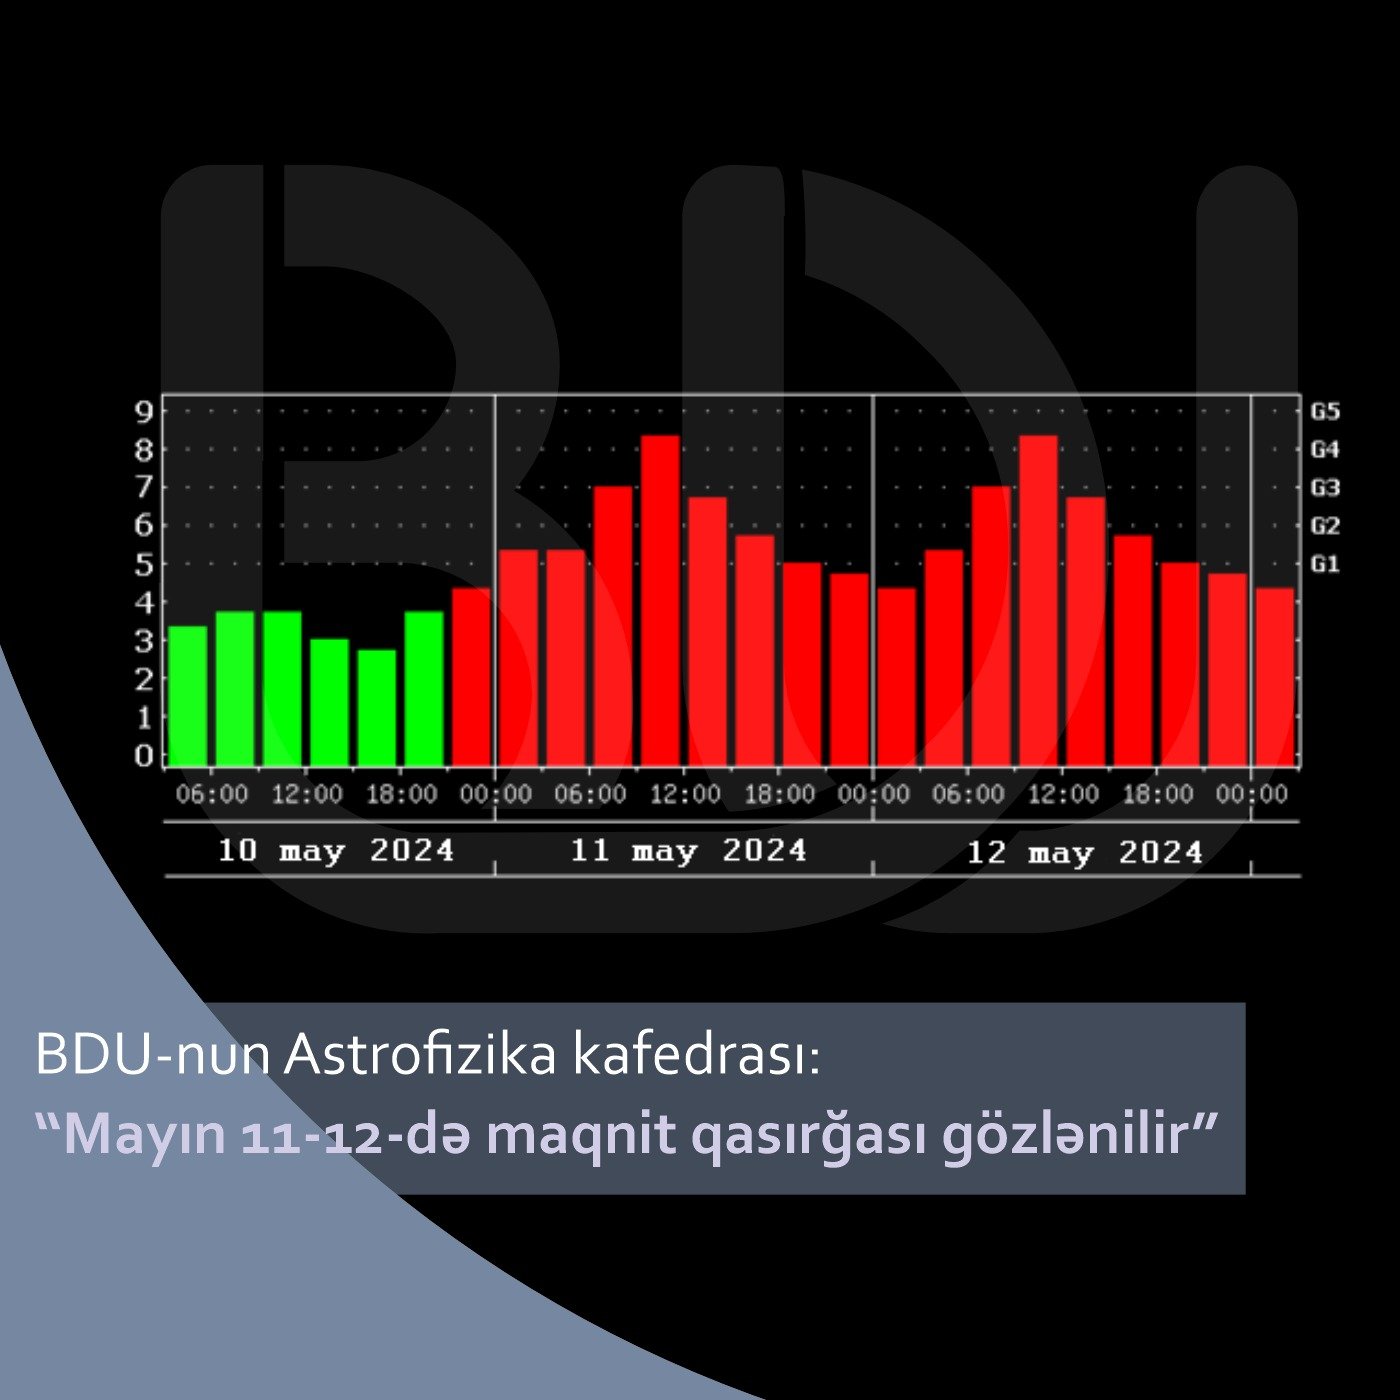 BDU-nun Astrofizika kafedrası: “Mayın 11-12-də maqnit qasırğası gözlənilir”